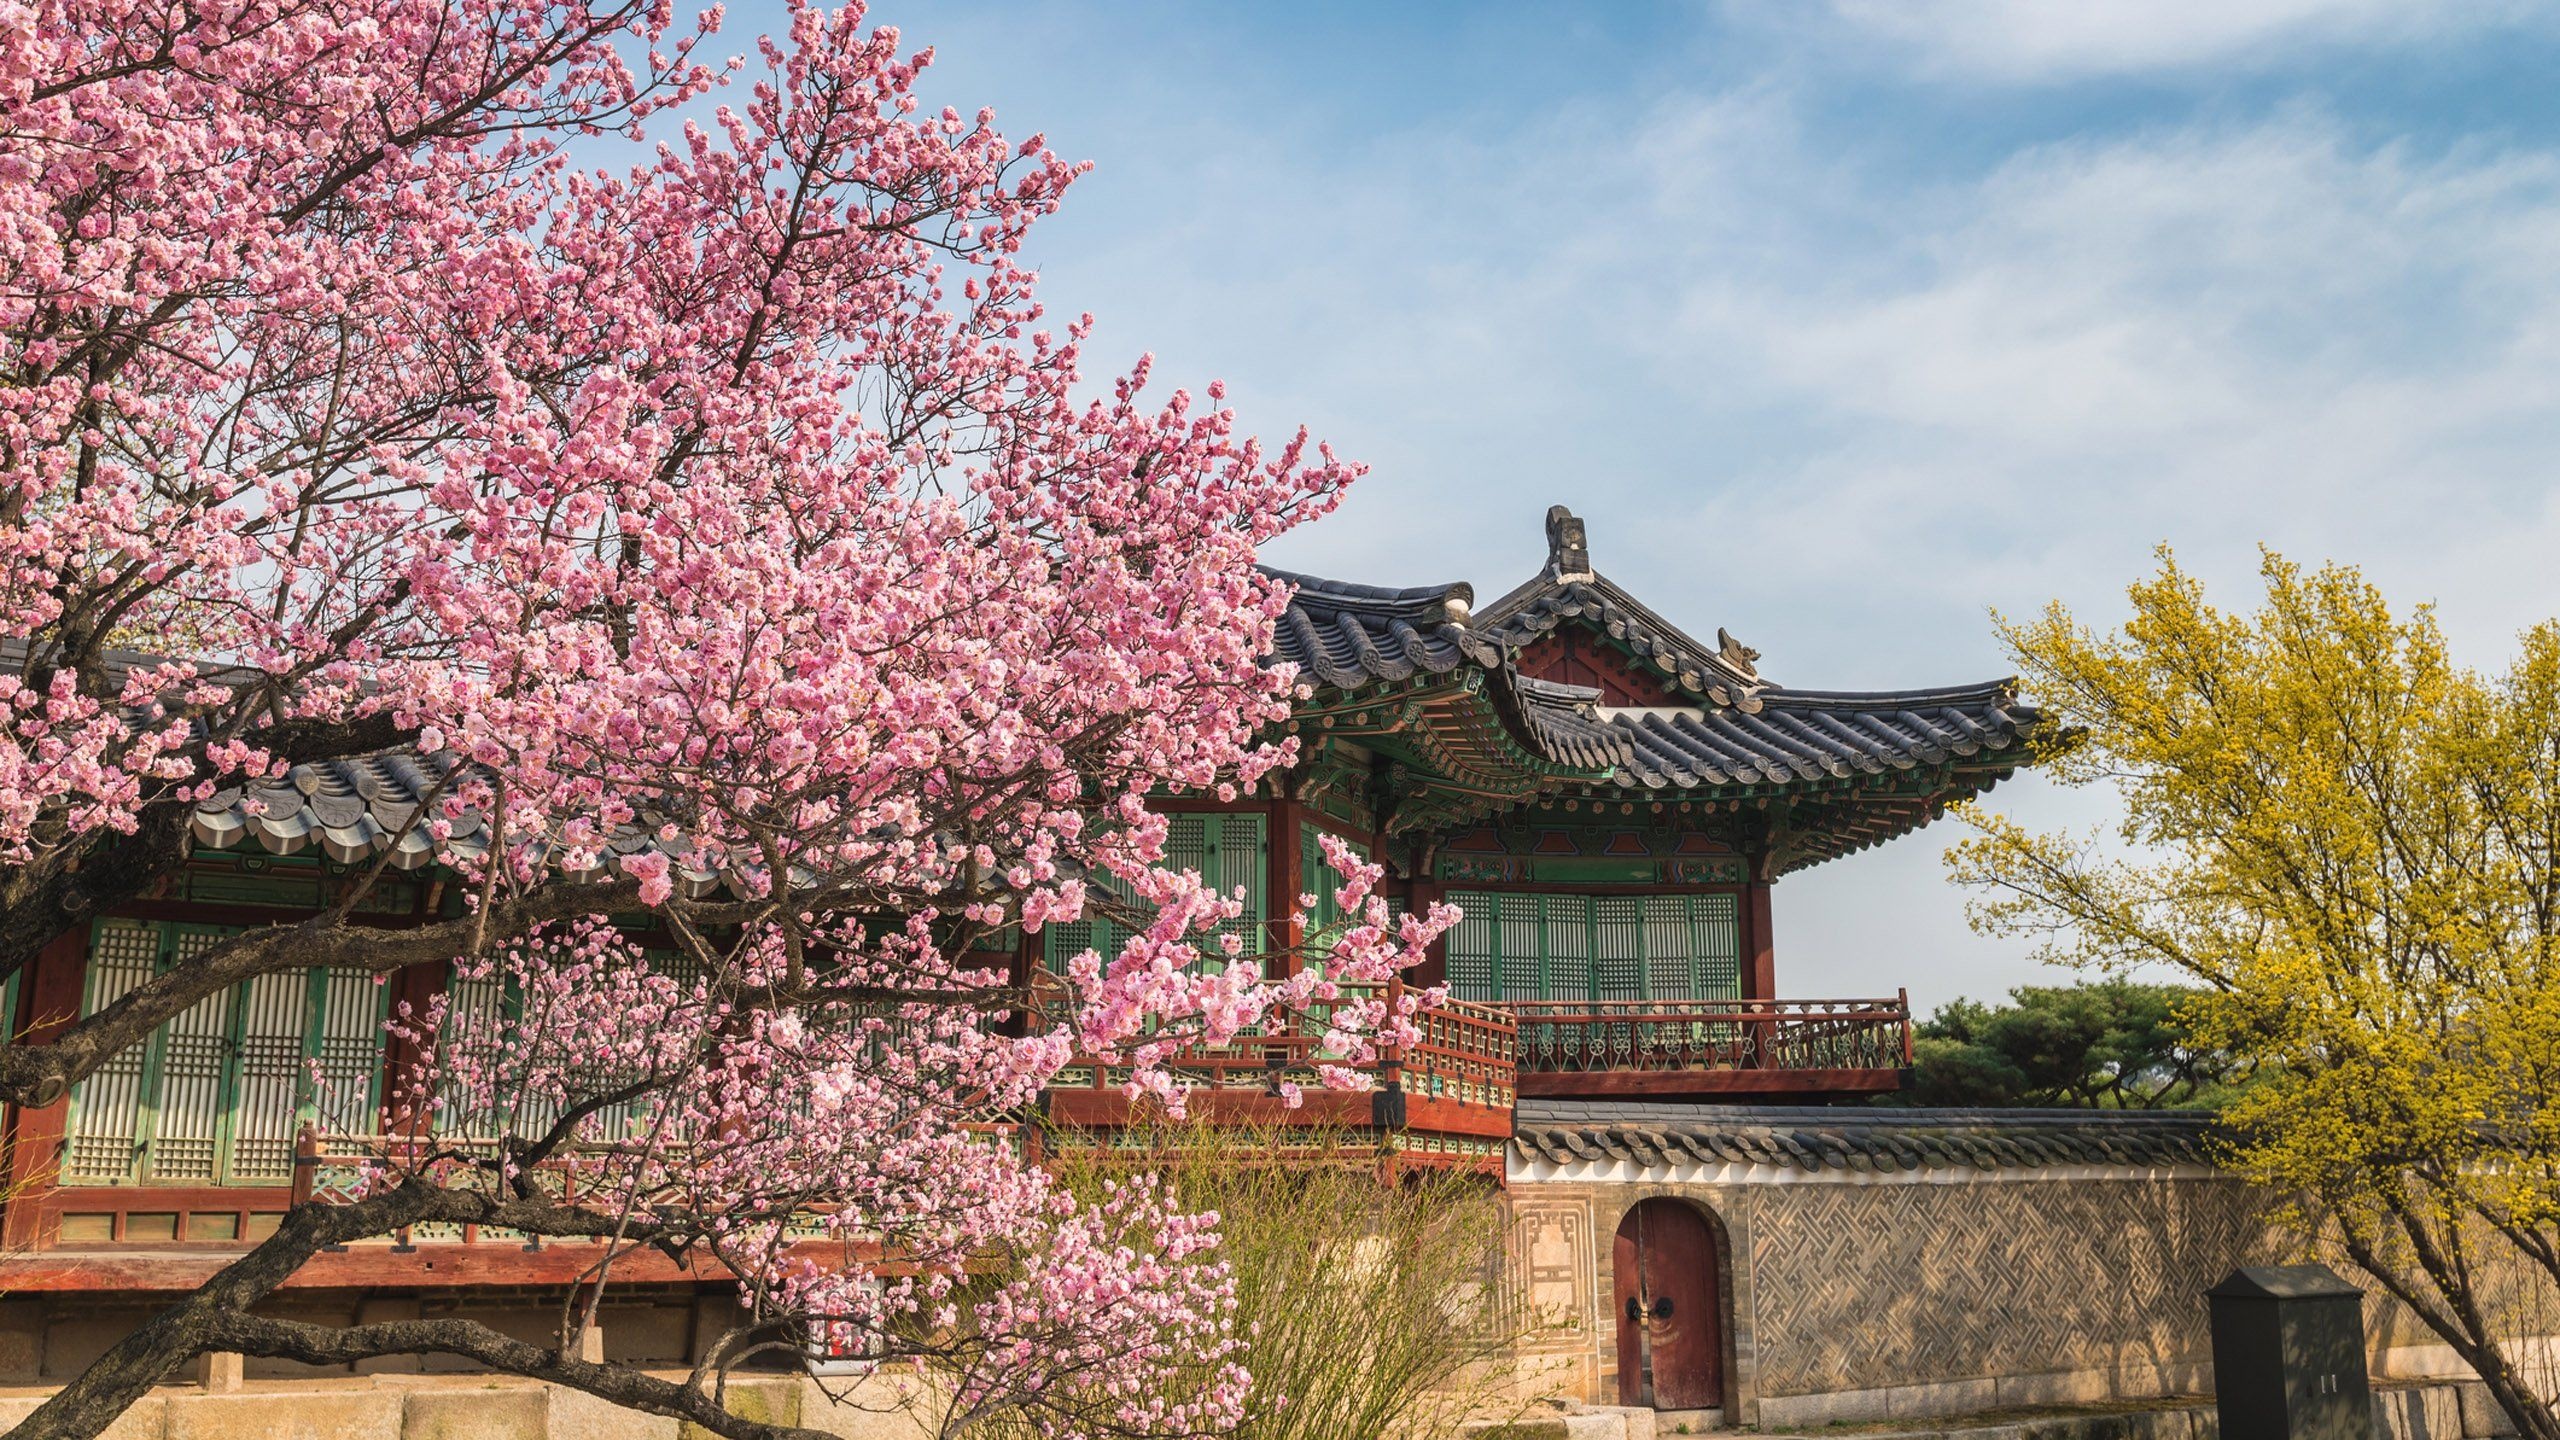 Seoul city tour, Korean cuisine, Historic palaces, Shopping districts, 2560x1440 HD Desktop